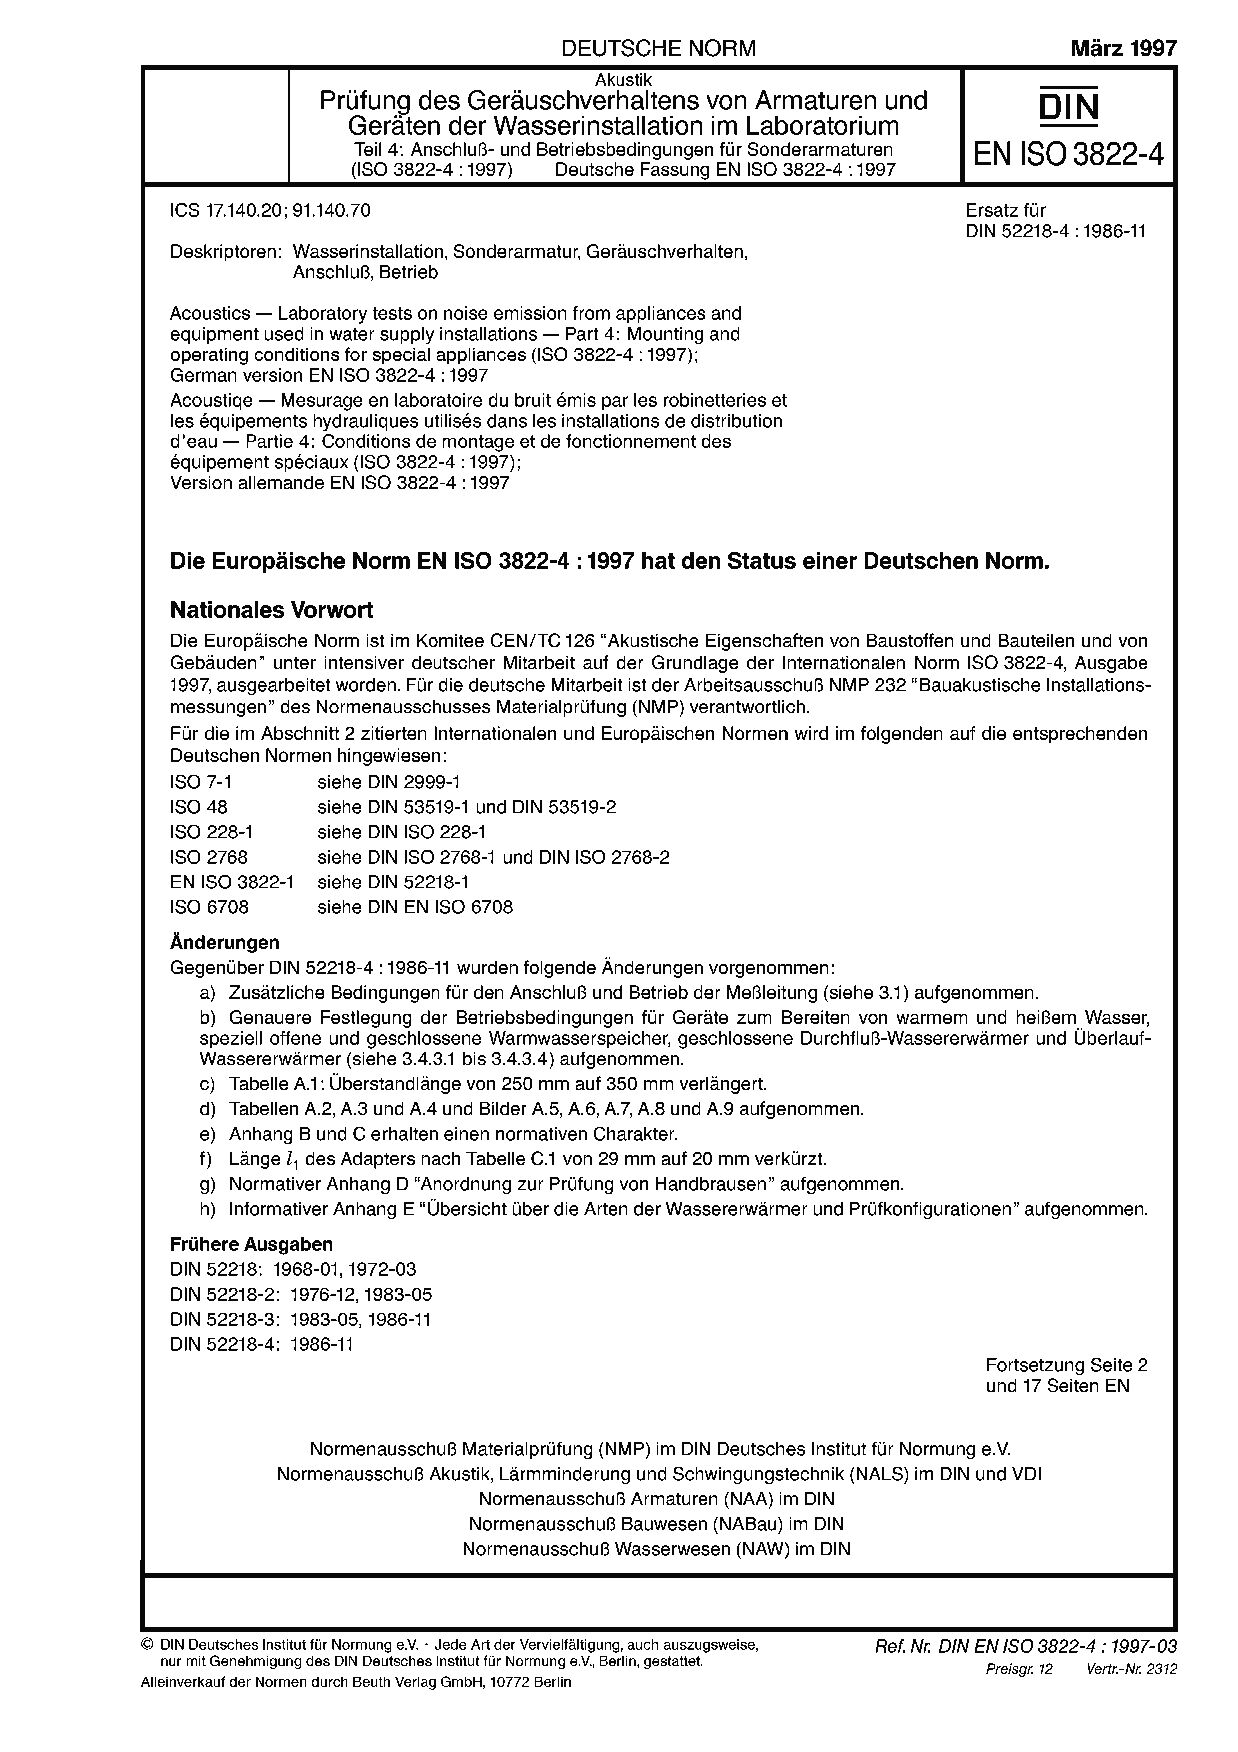 DIN EN ISO 3822-4:1997封面图